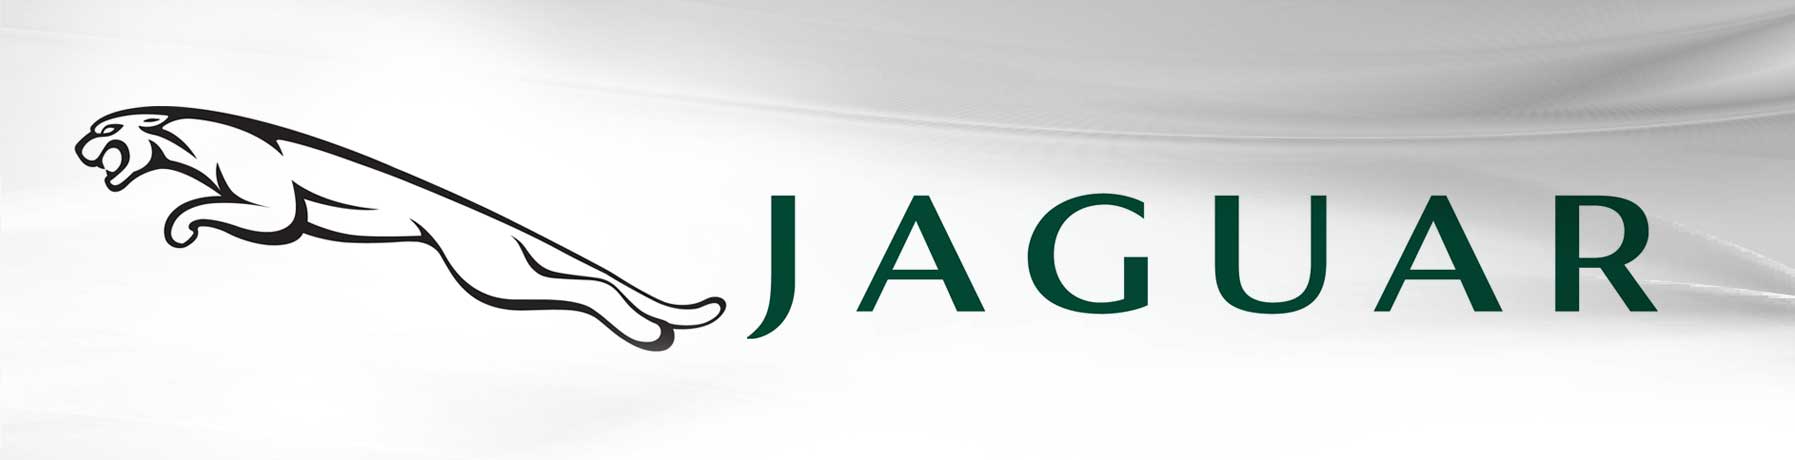 We service Jaguar Vehicles